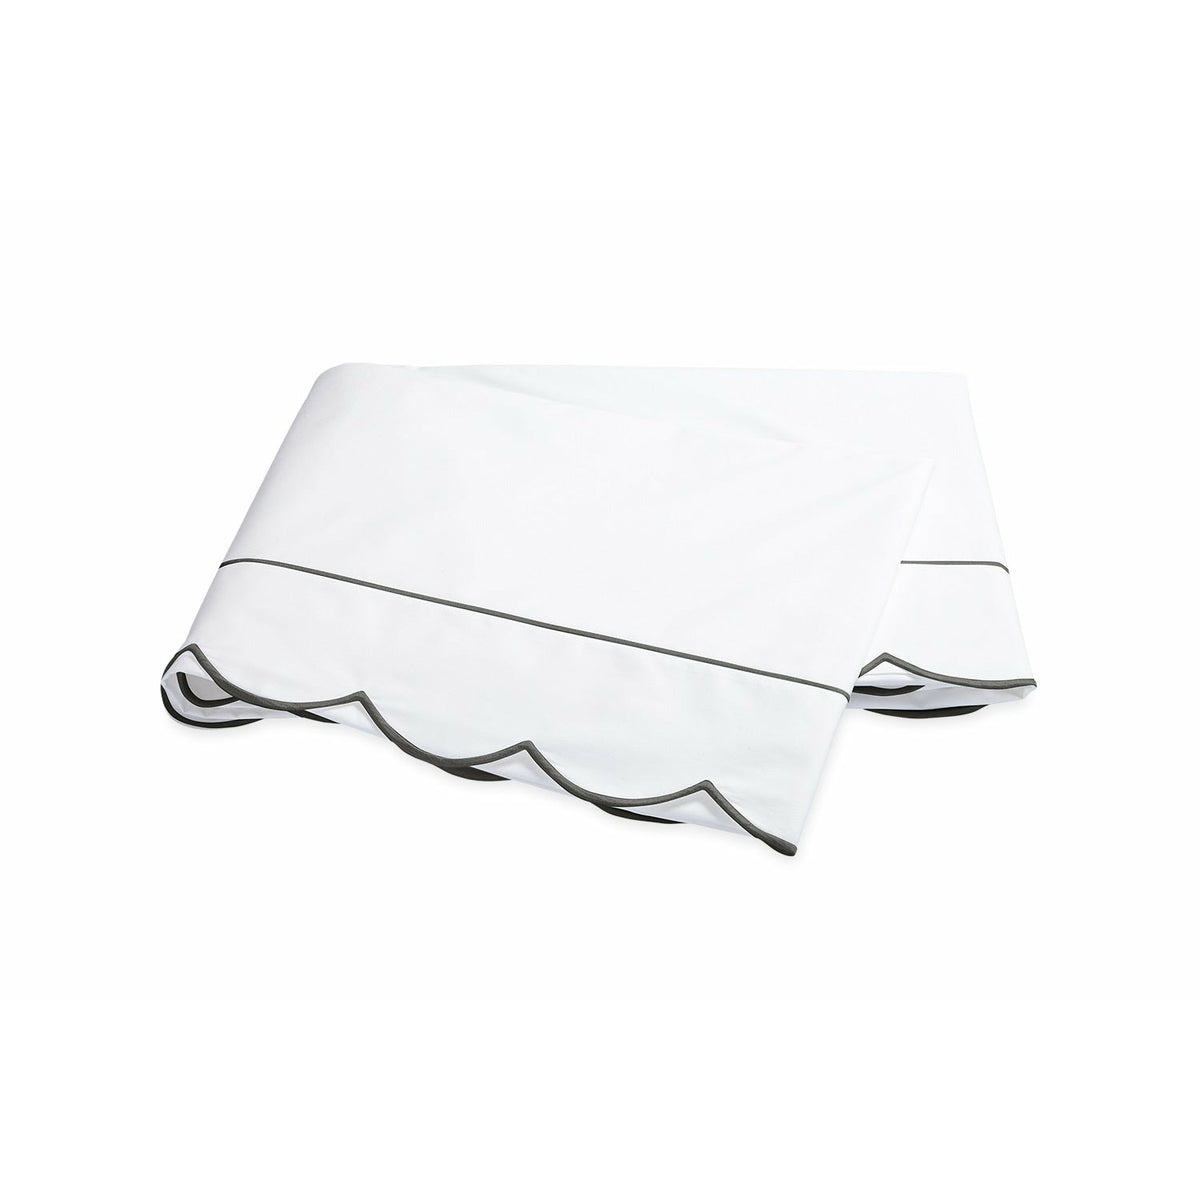 Matouk Butterfield Bedding Flat Sheet Charcoal Fine Linens